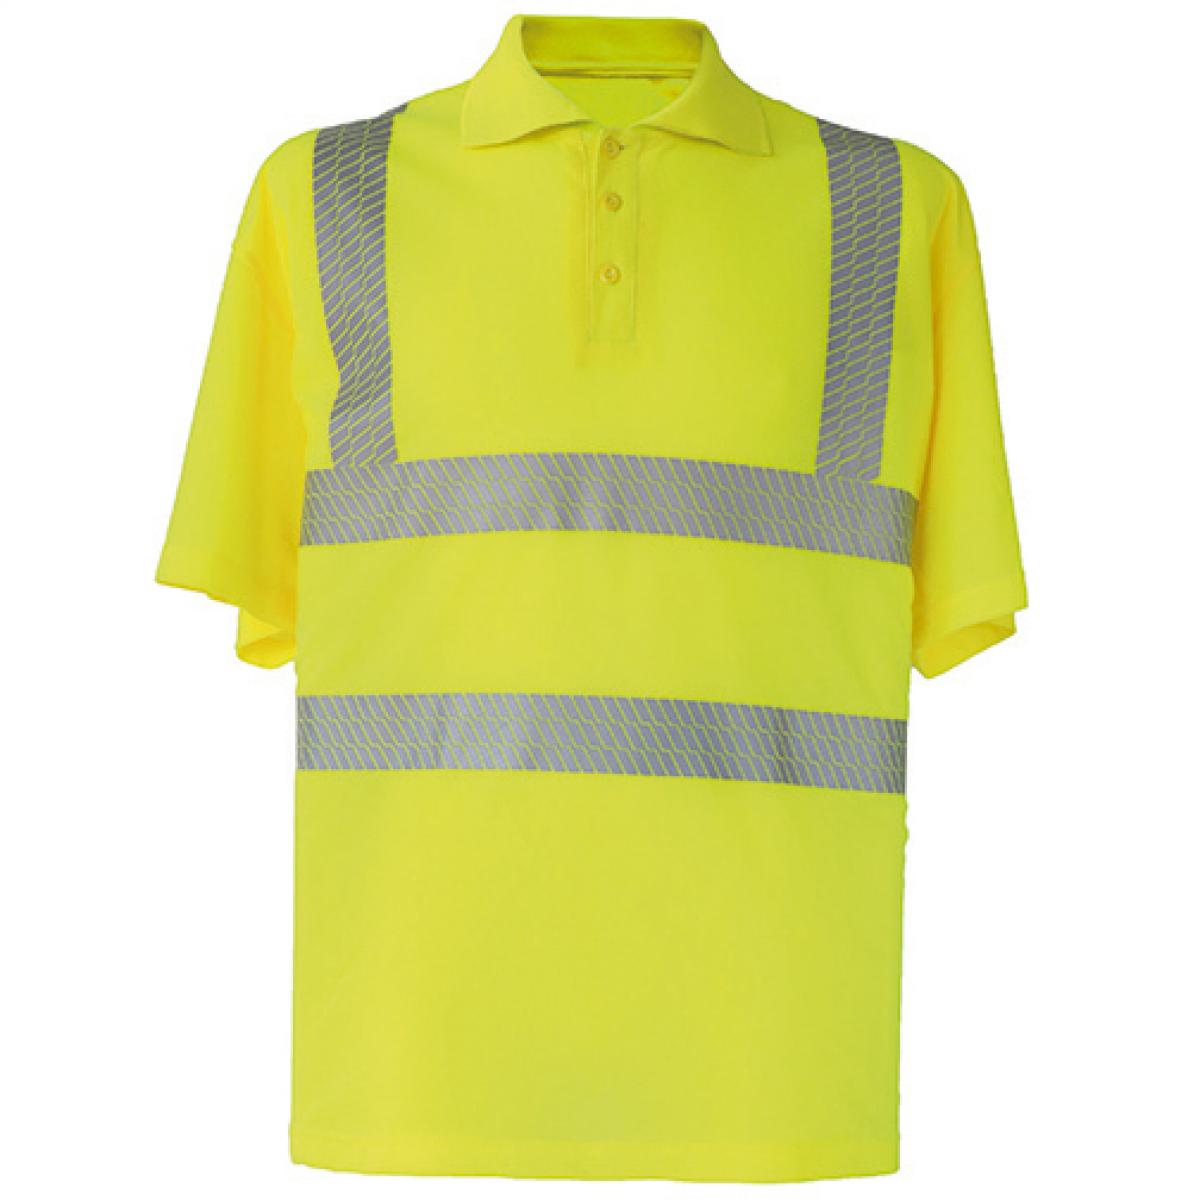 Hersteller: Korntex Herstellernummer: KXBRP Artikelbezeichnung: Hi-Viz Broken Reflective Polo Shirt EN ISO 20471 Farbe: Signal Yellow